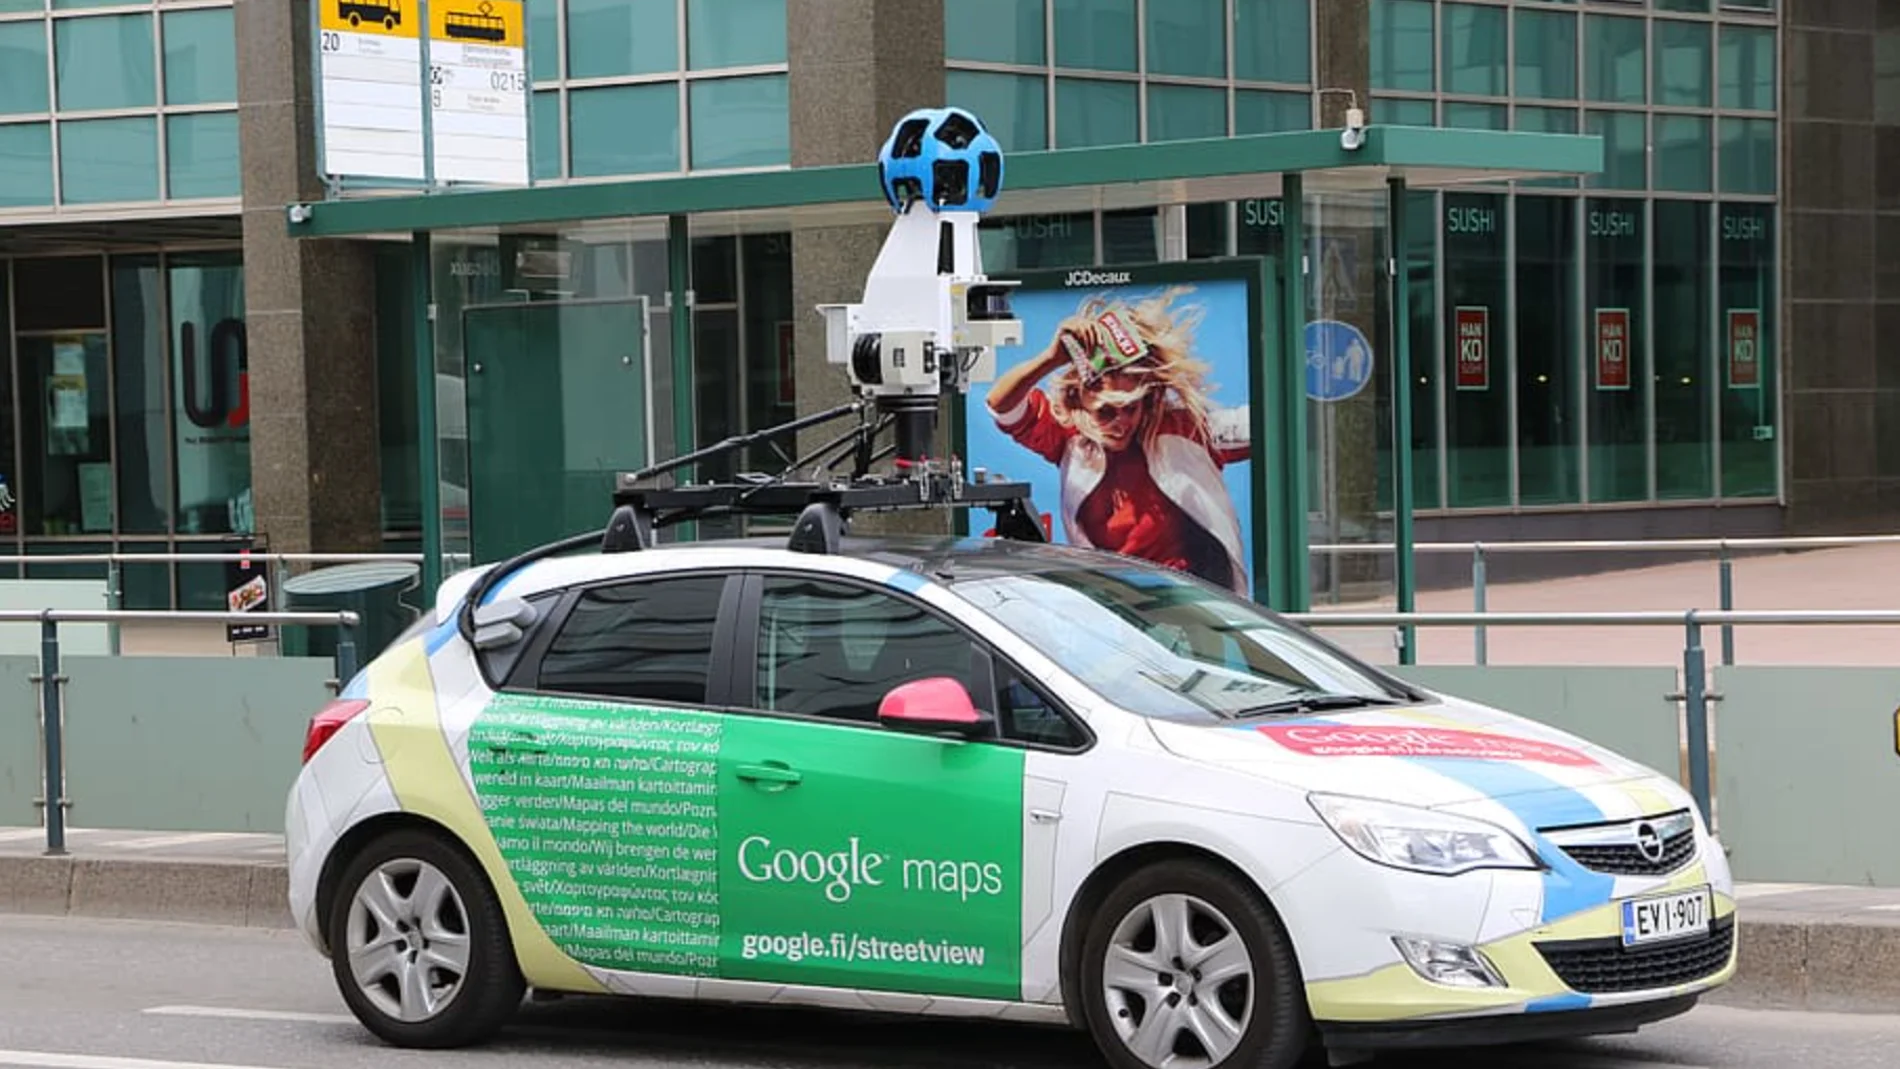 Así es el nuevo servicio de Google Maps: pixela tu vivienda en sus mapas virtuales